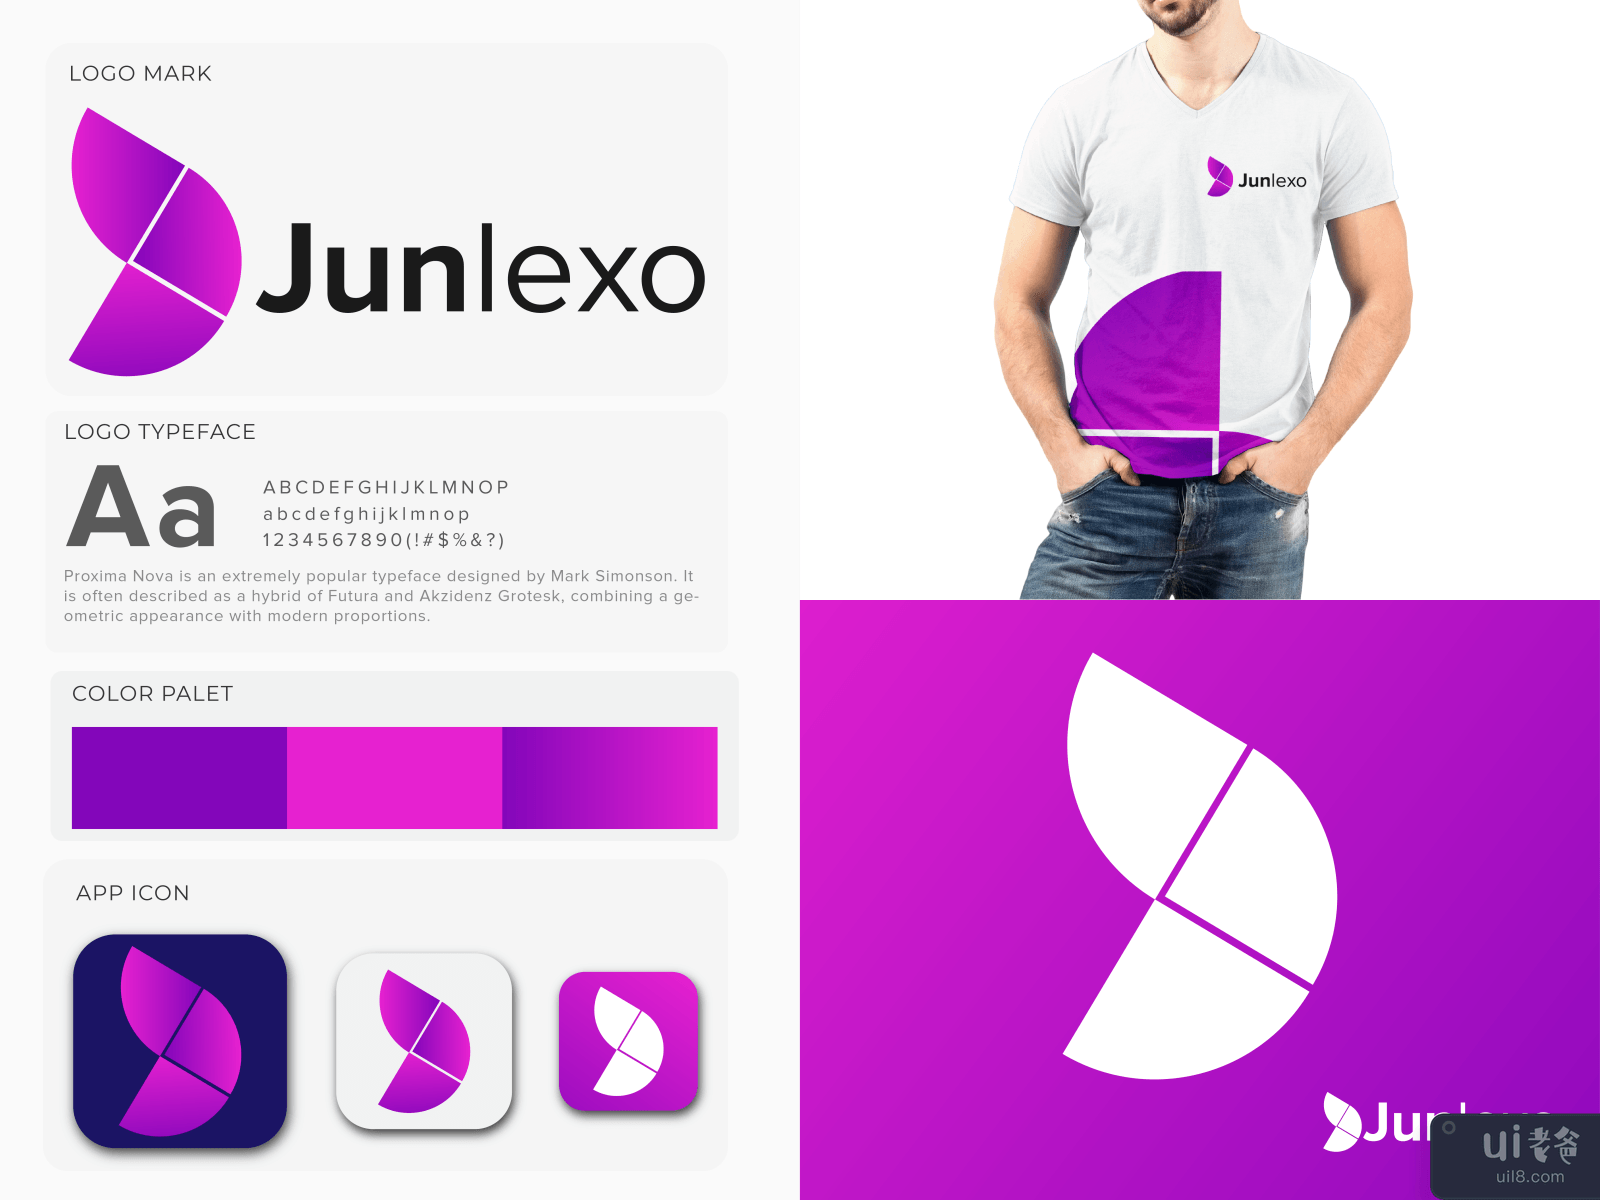 J Logomark - Junlexo Logo and Branding